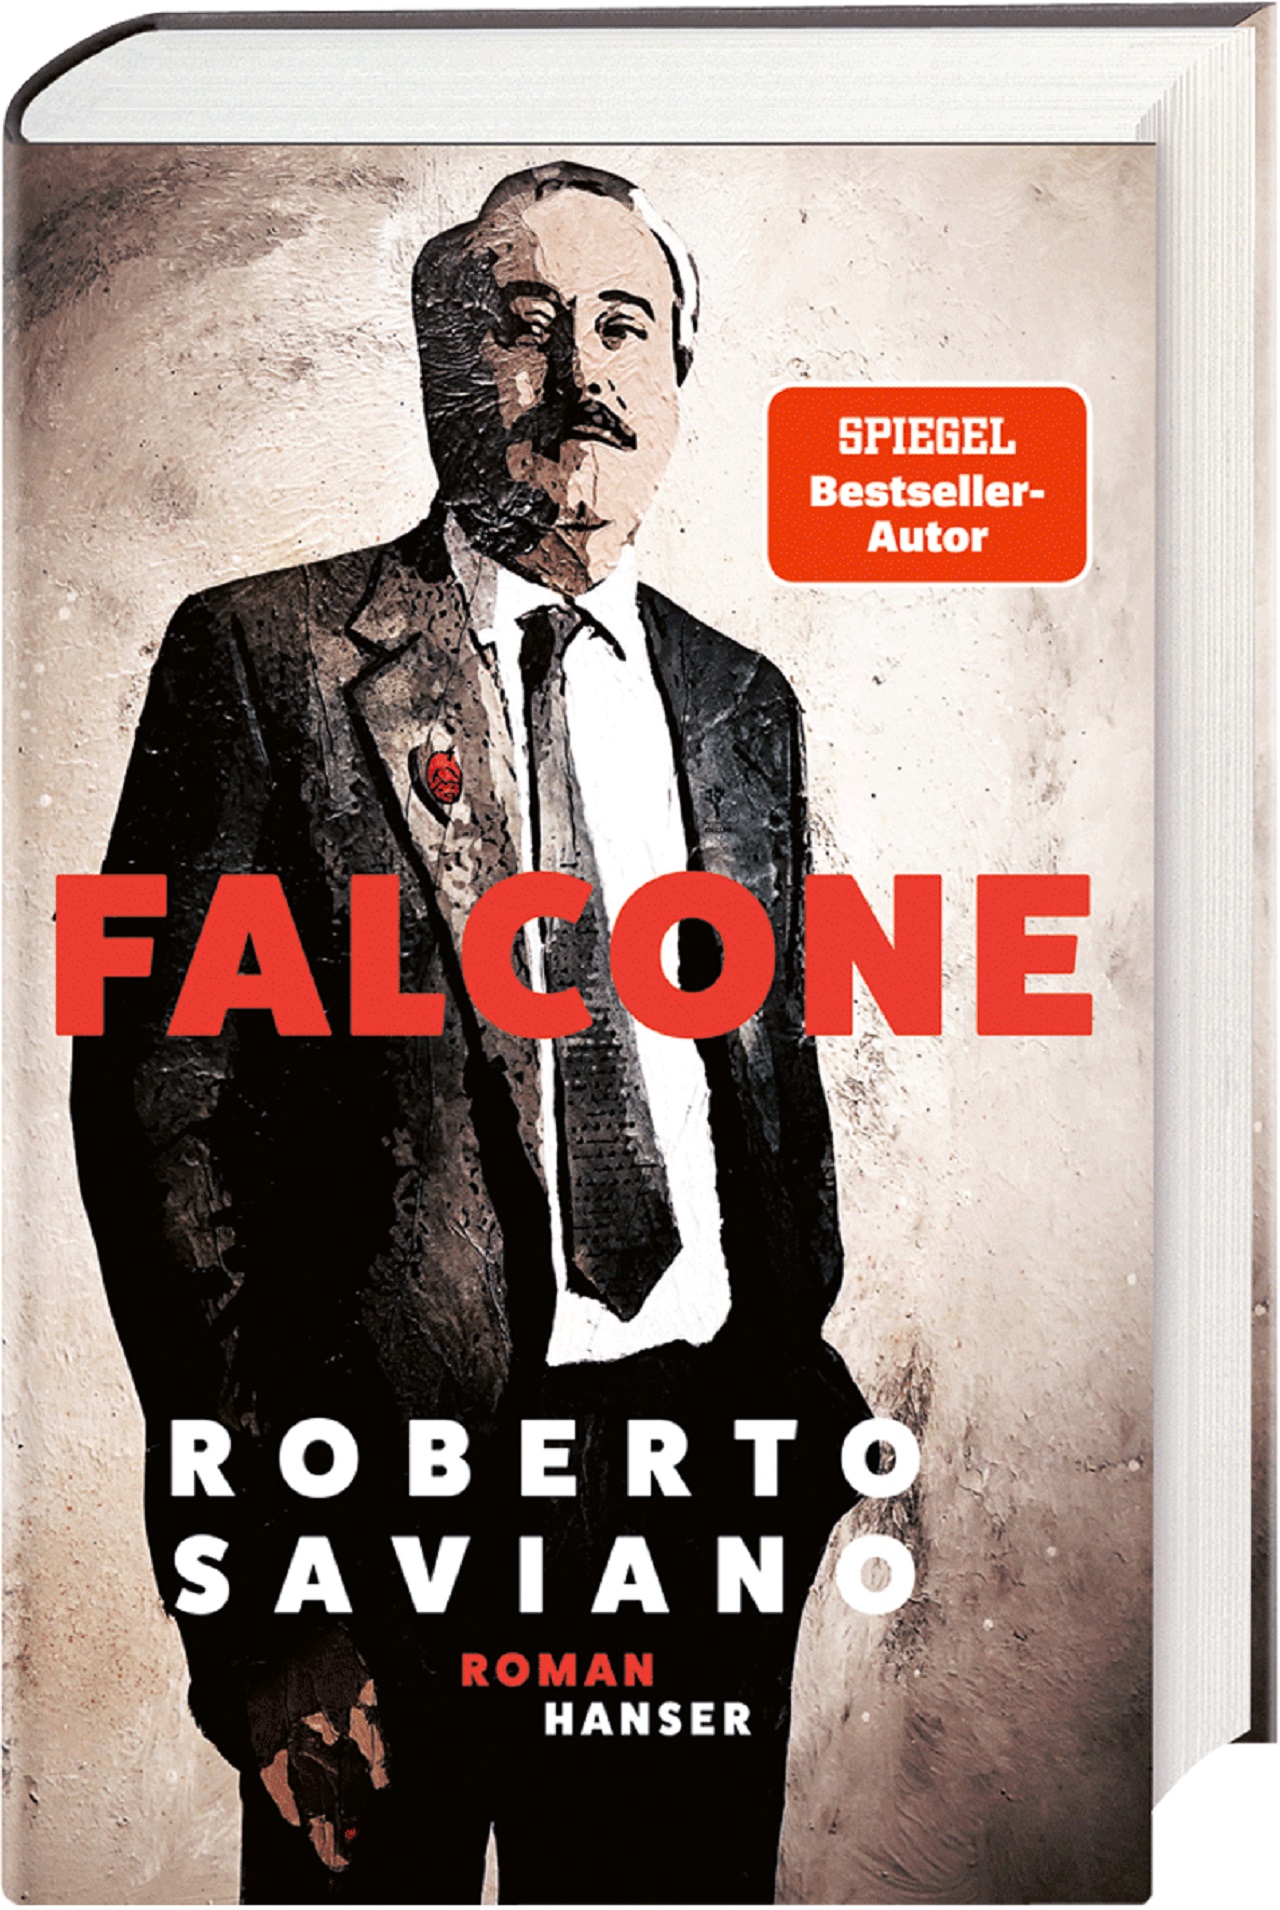 Giovanni Falcone am Cover von Roberto Savianos Roman "Falcone".